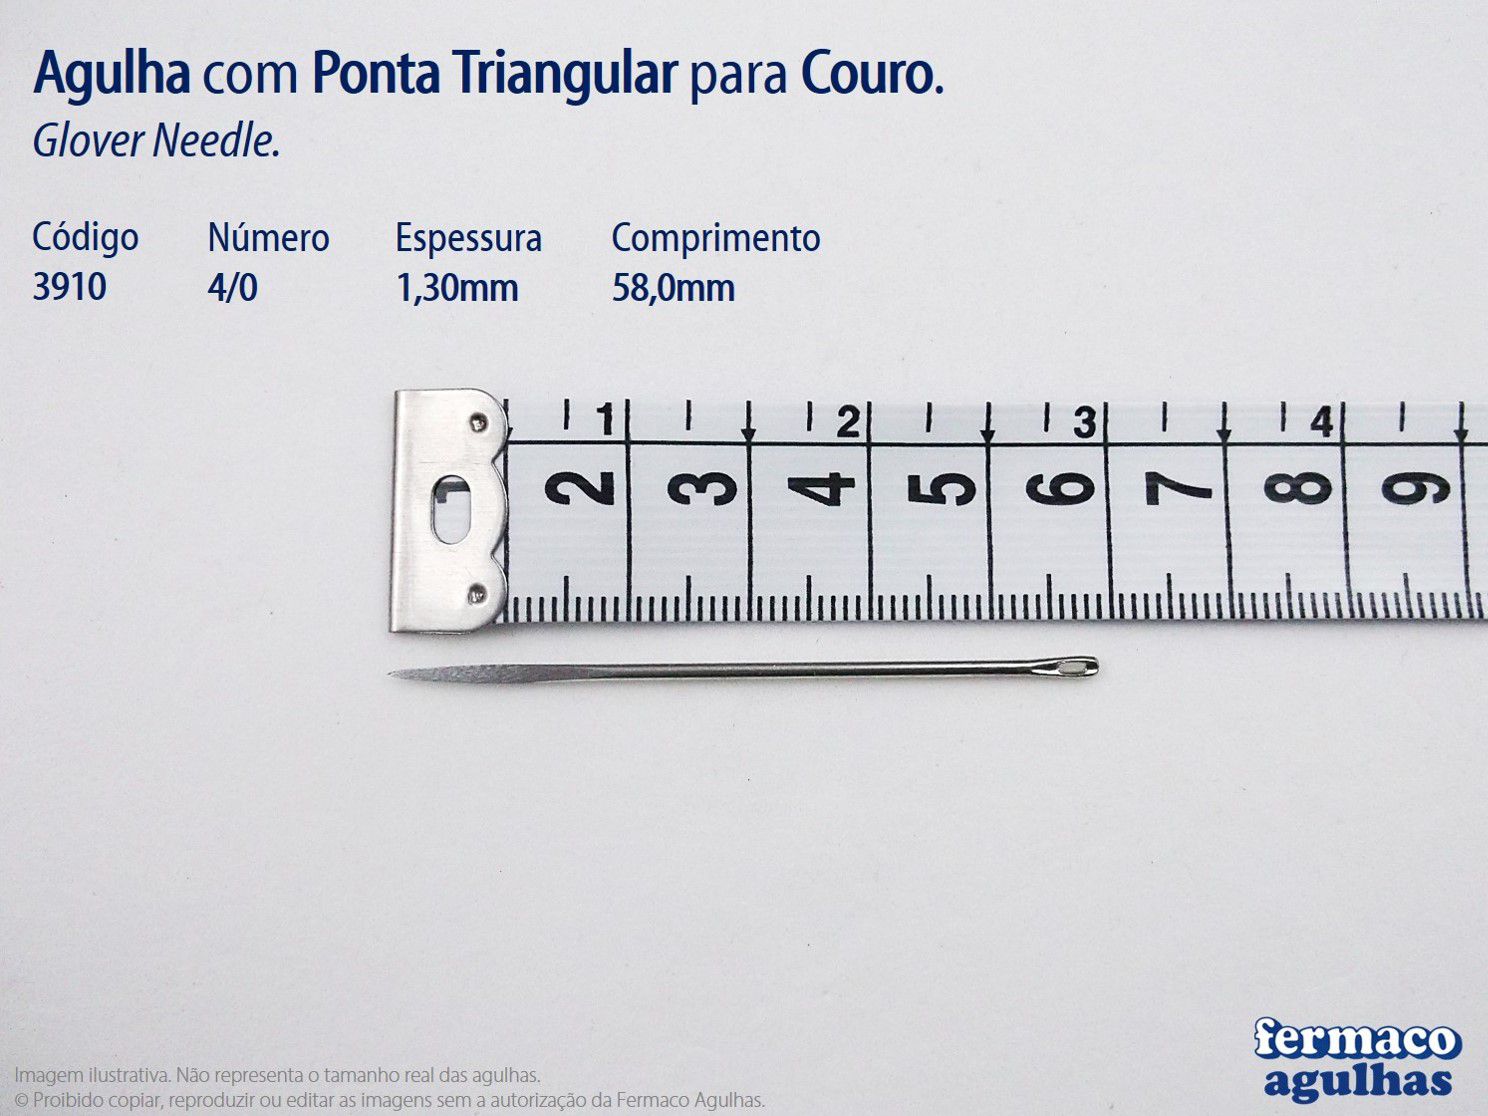 Agulha para Couro com Ponta Triangular números 2/0 e 4/0. Agulha Glover Needle 2/0 e 4/0. Kit com 6 agulhas fabricadas na Europa!